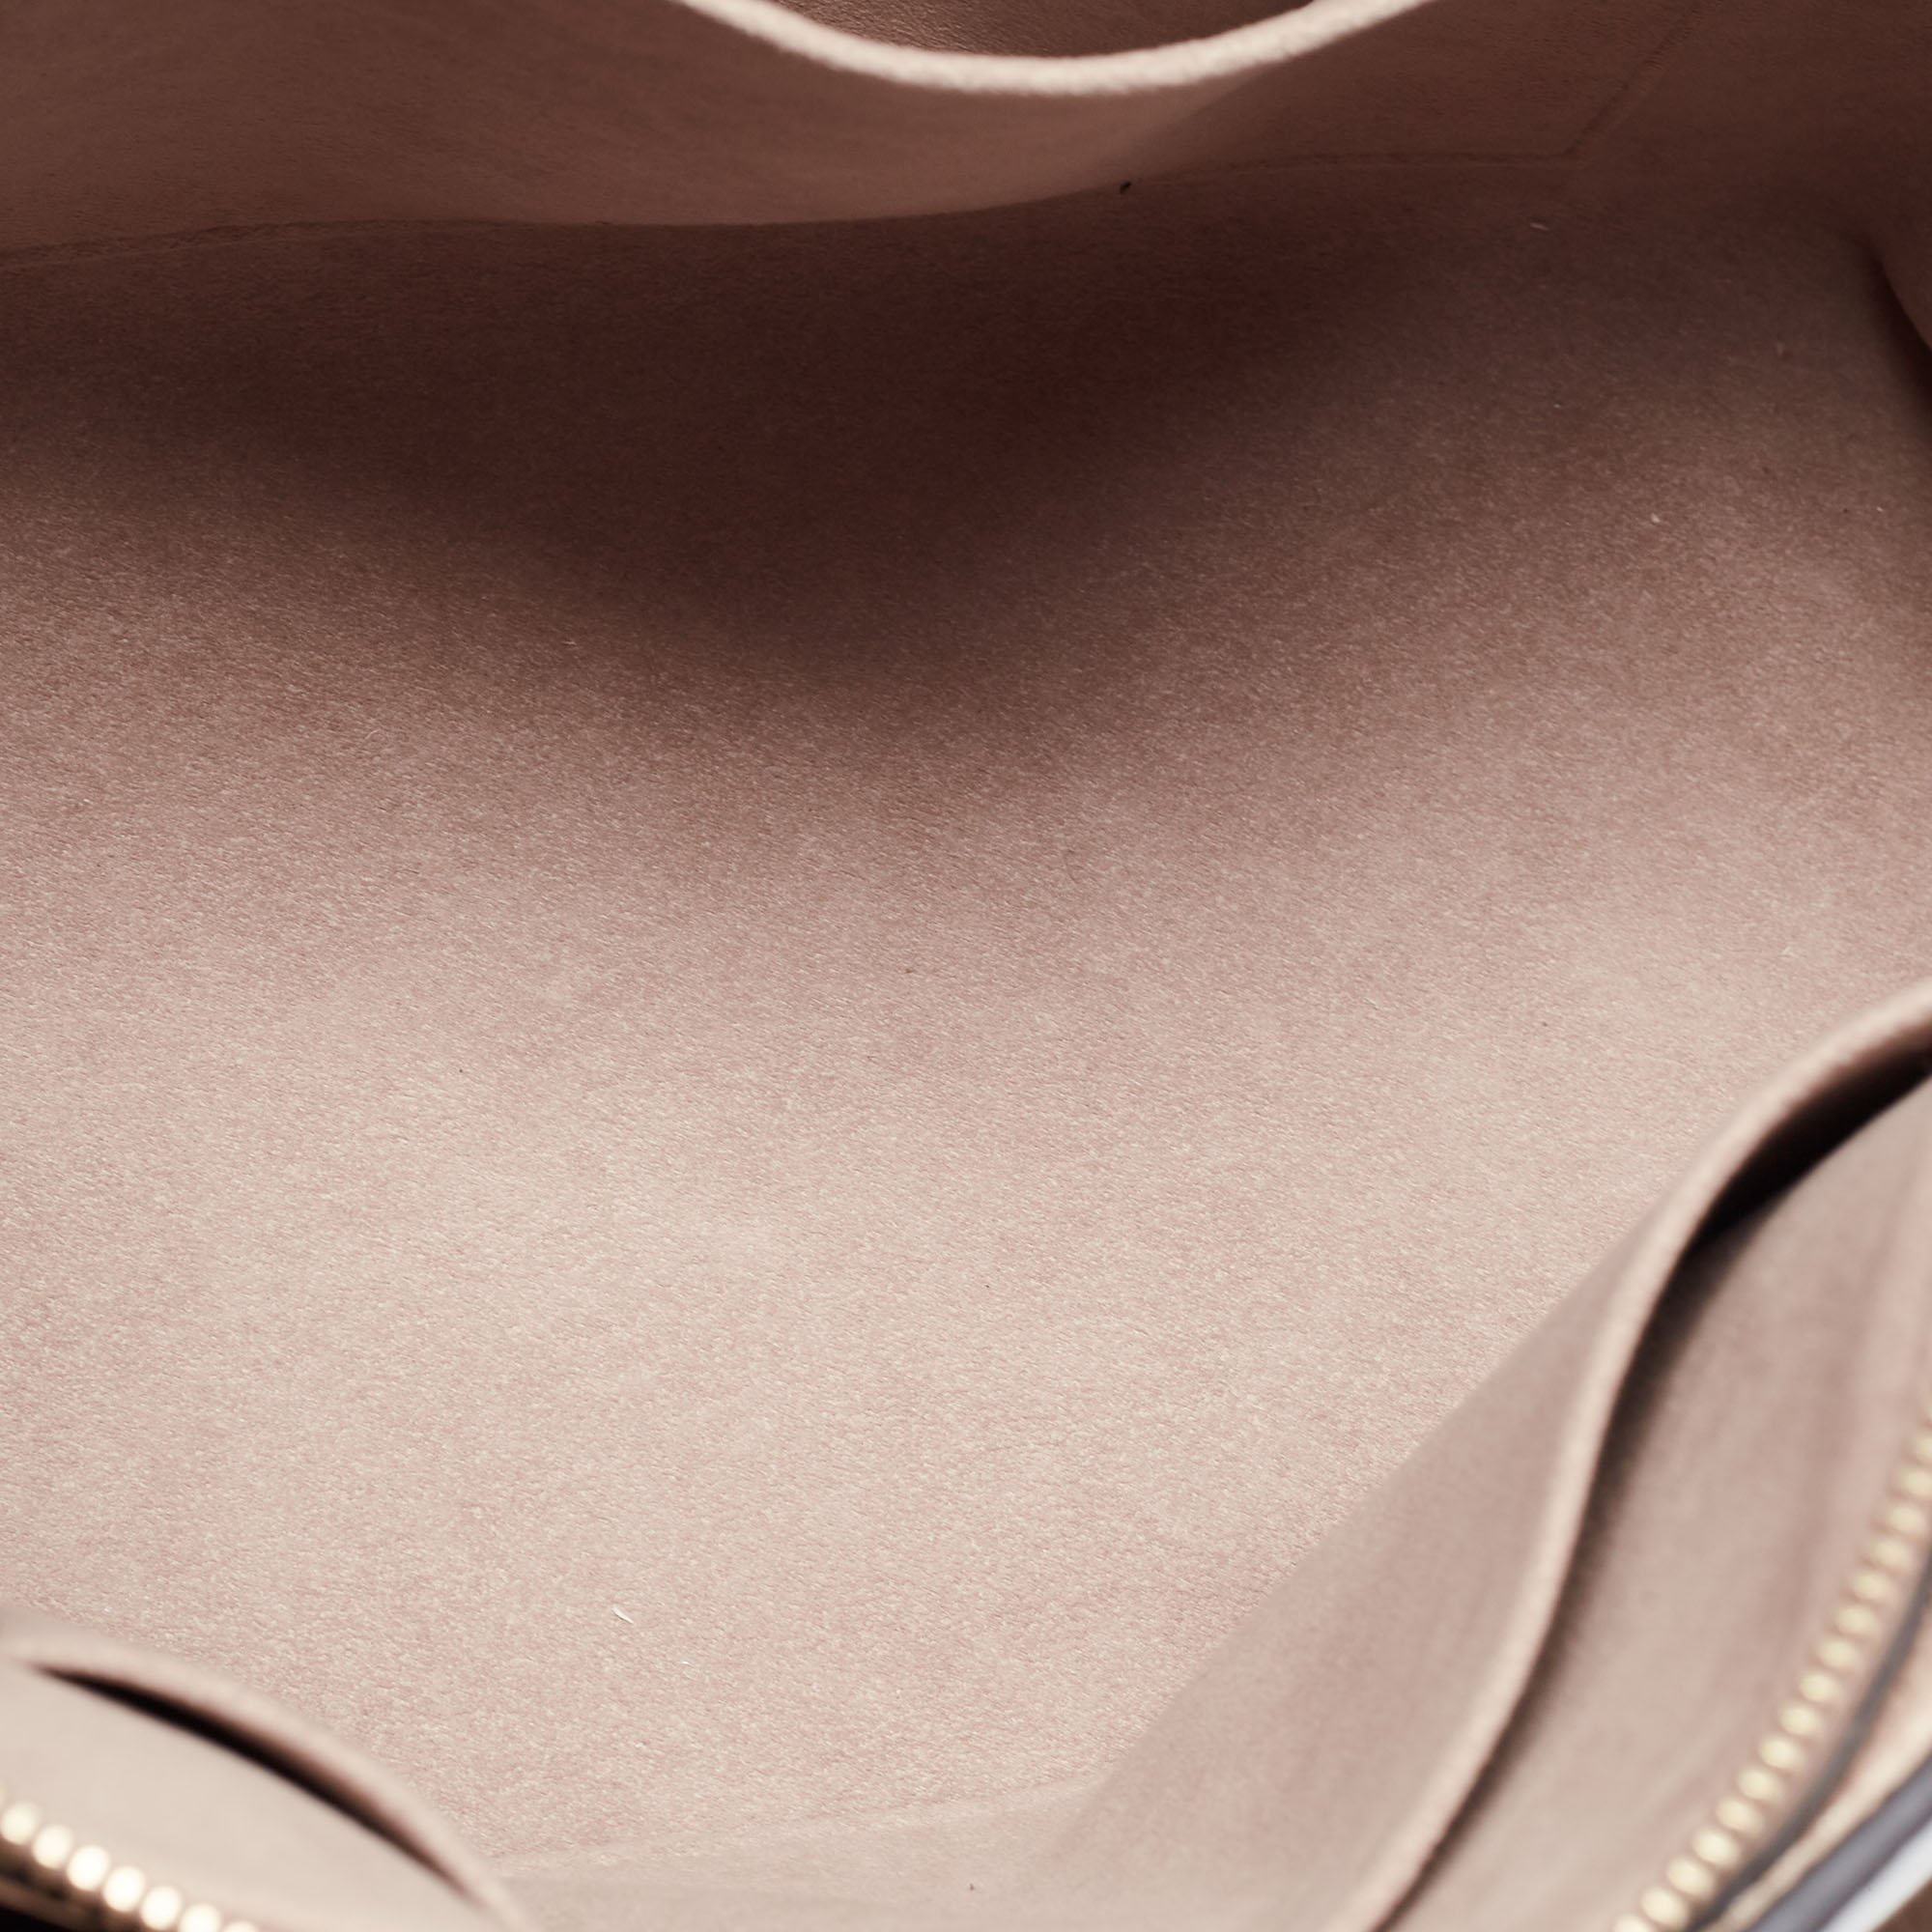 Louis Vuitton Bicolor Monogram Empriente Leather Patit Palais Bag